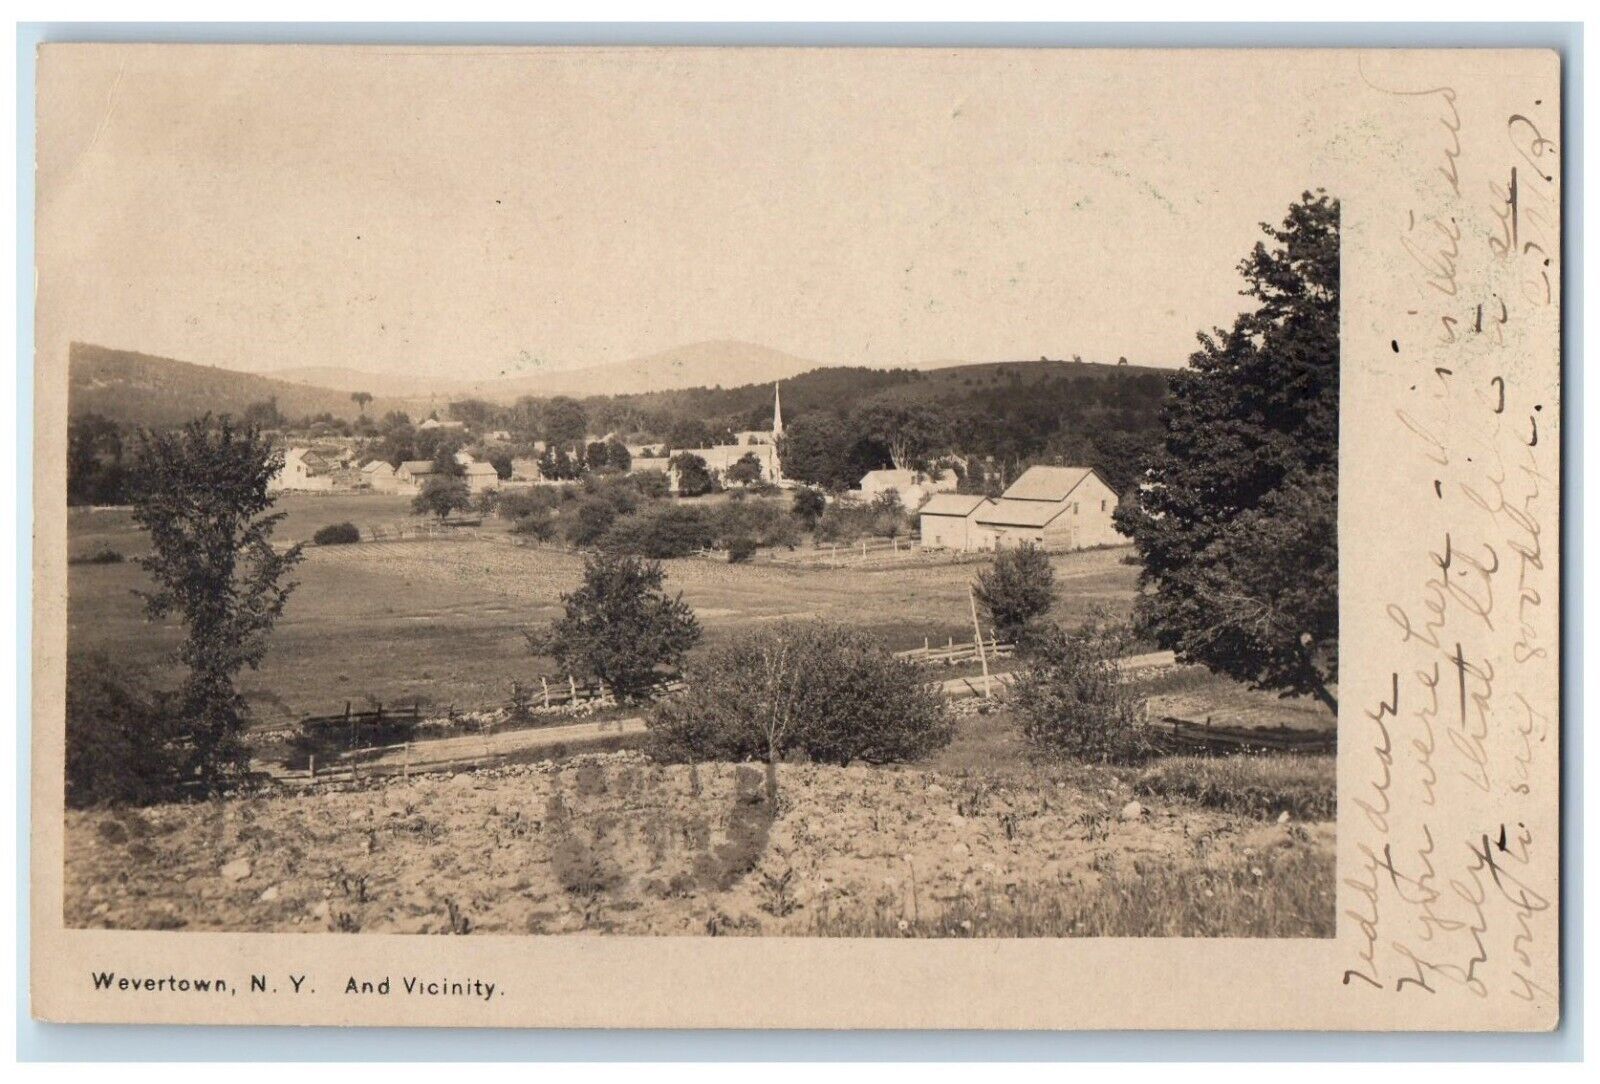 1906 Wevertown New York And Vicinity Adirondacks Riparius NY RPPC Photo Postcard